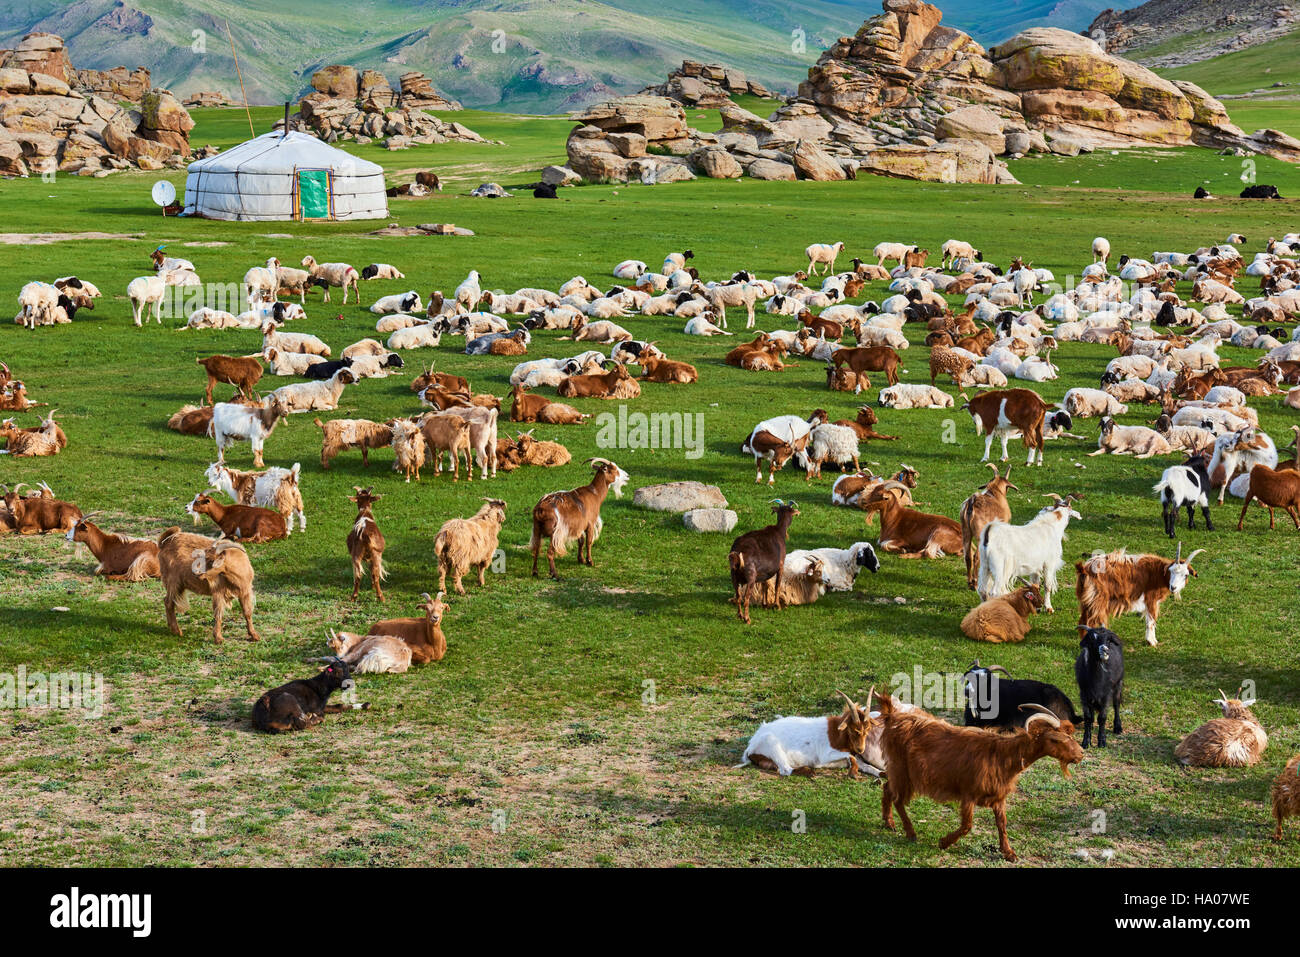 Mongolia, Bayankhongor province, nomad camp Stock Photo